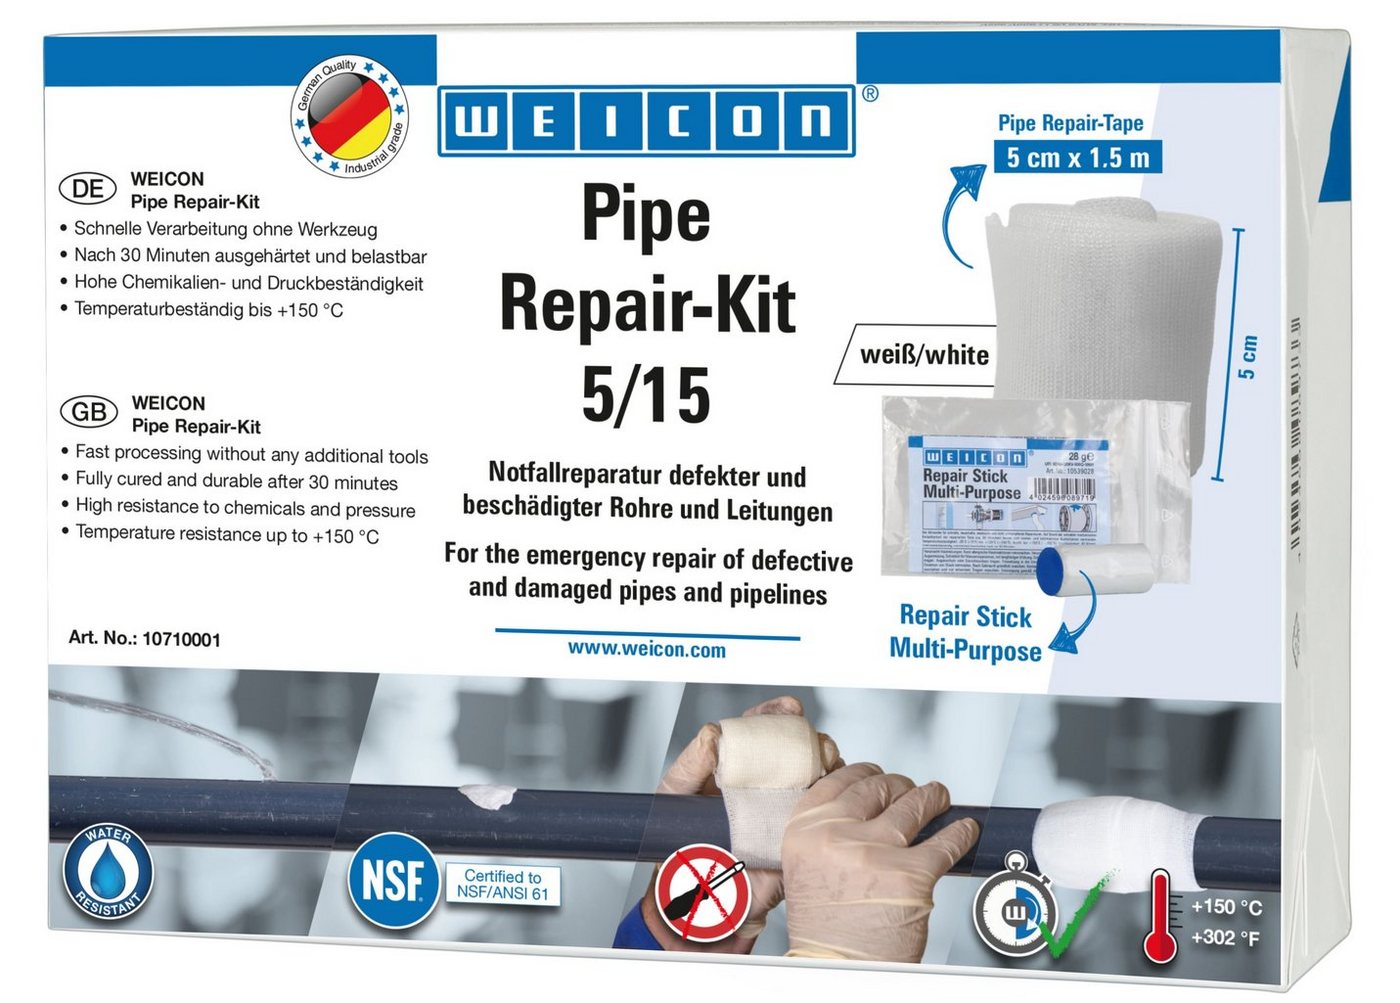 WEICON Reparatur-Set Pipe Repair-Kit, Notfall-Reparatur beschädigter Rohre und Leitungen von WEICON